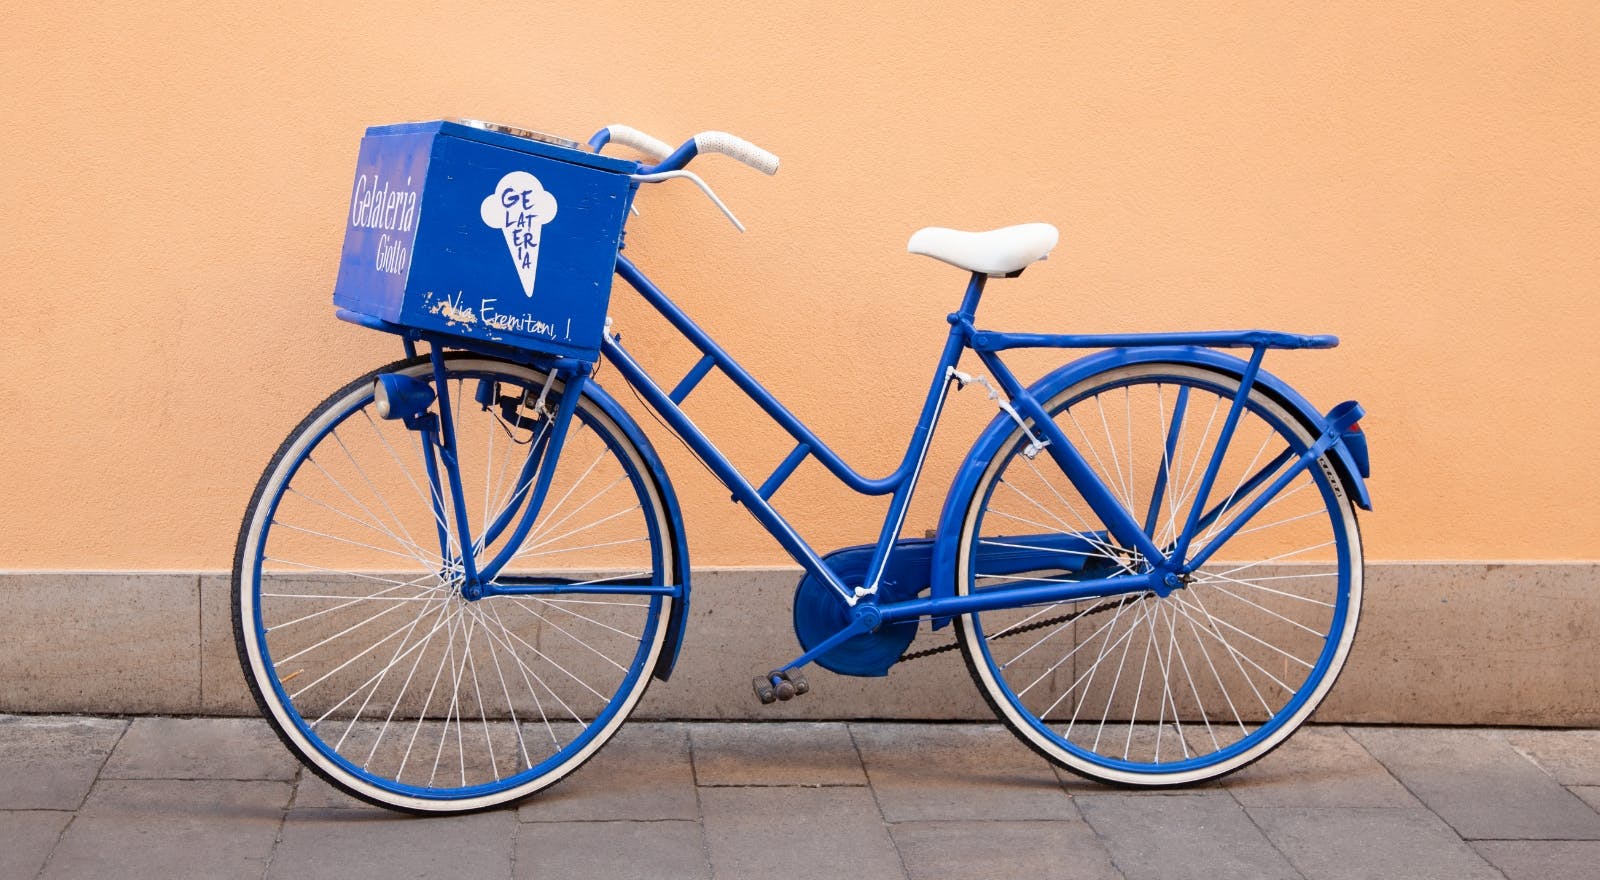 Gelateria Giotto bike